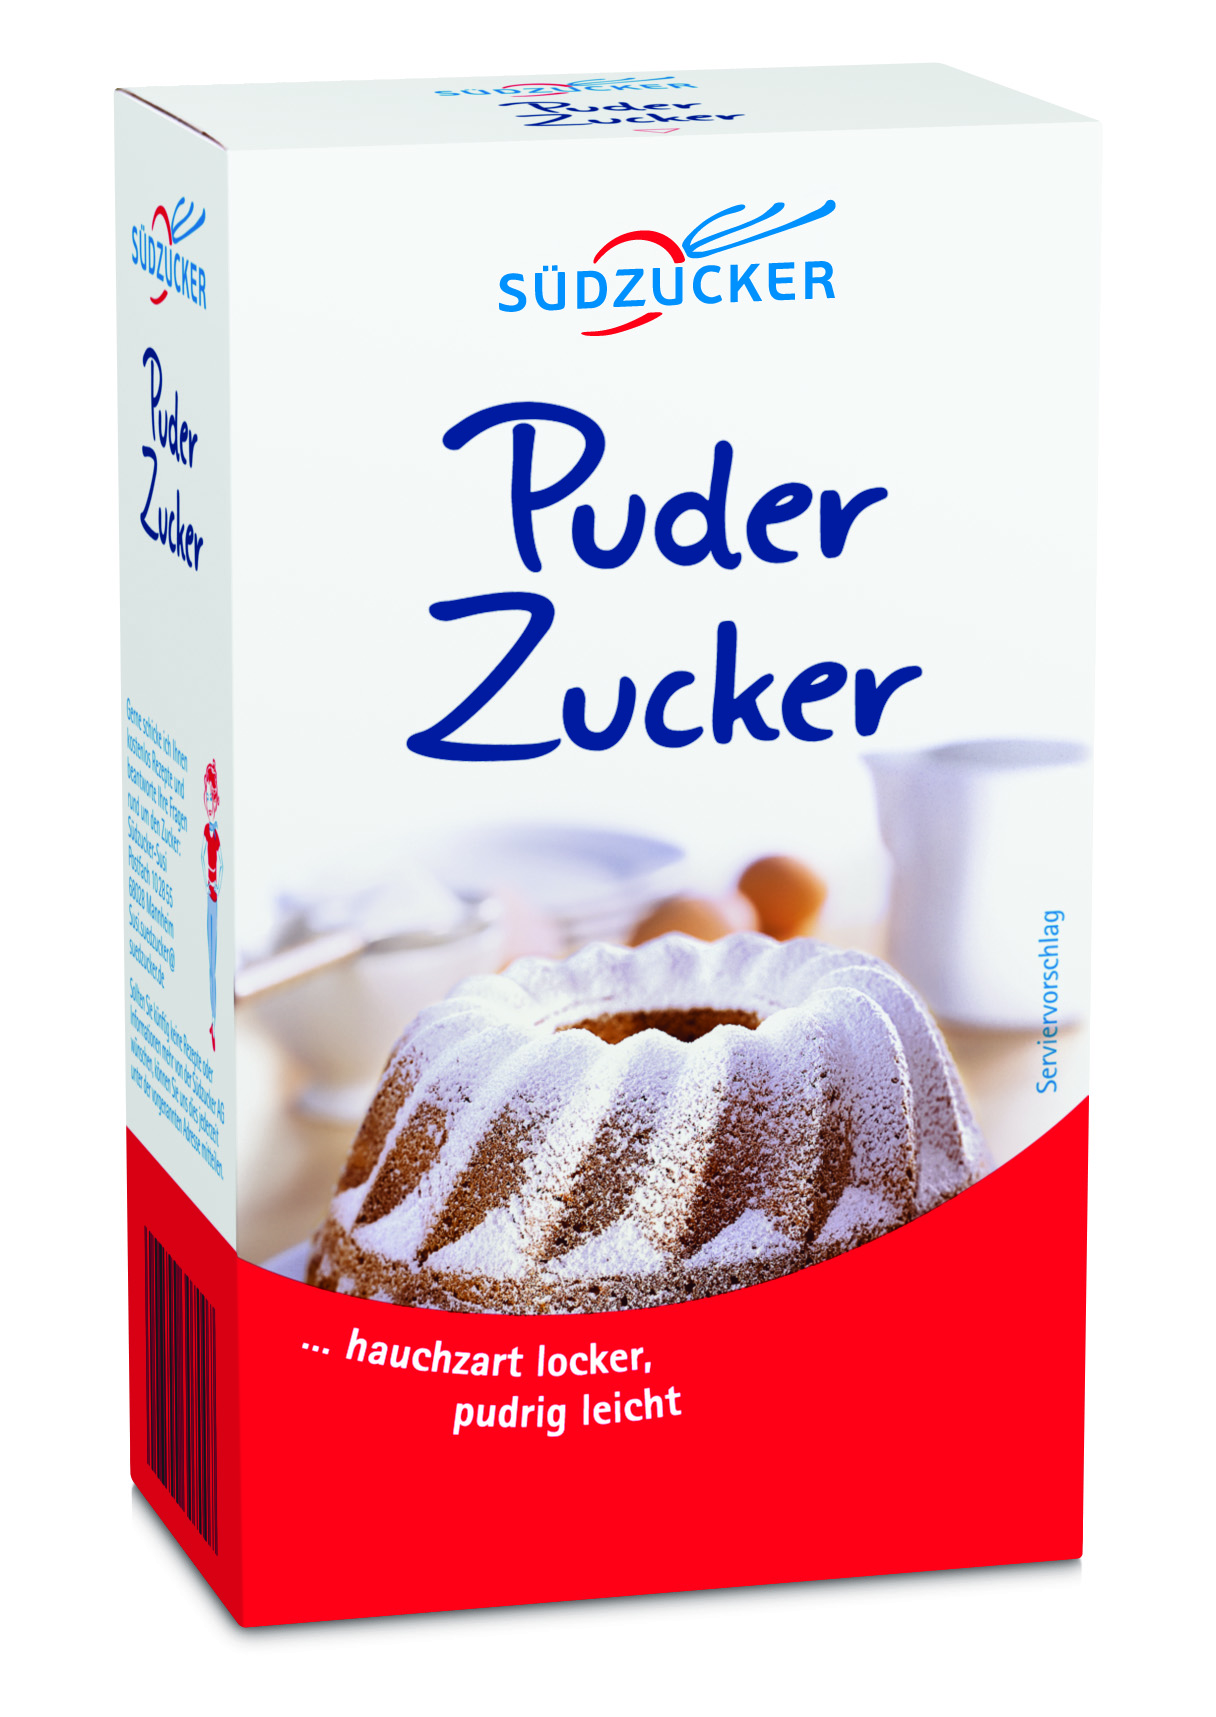 Puderzucker 250g